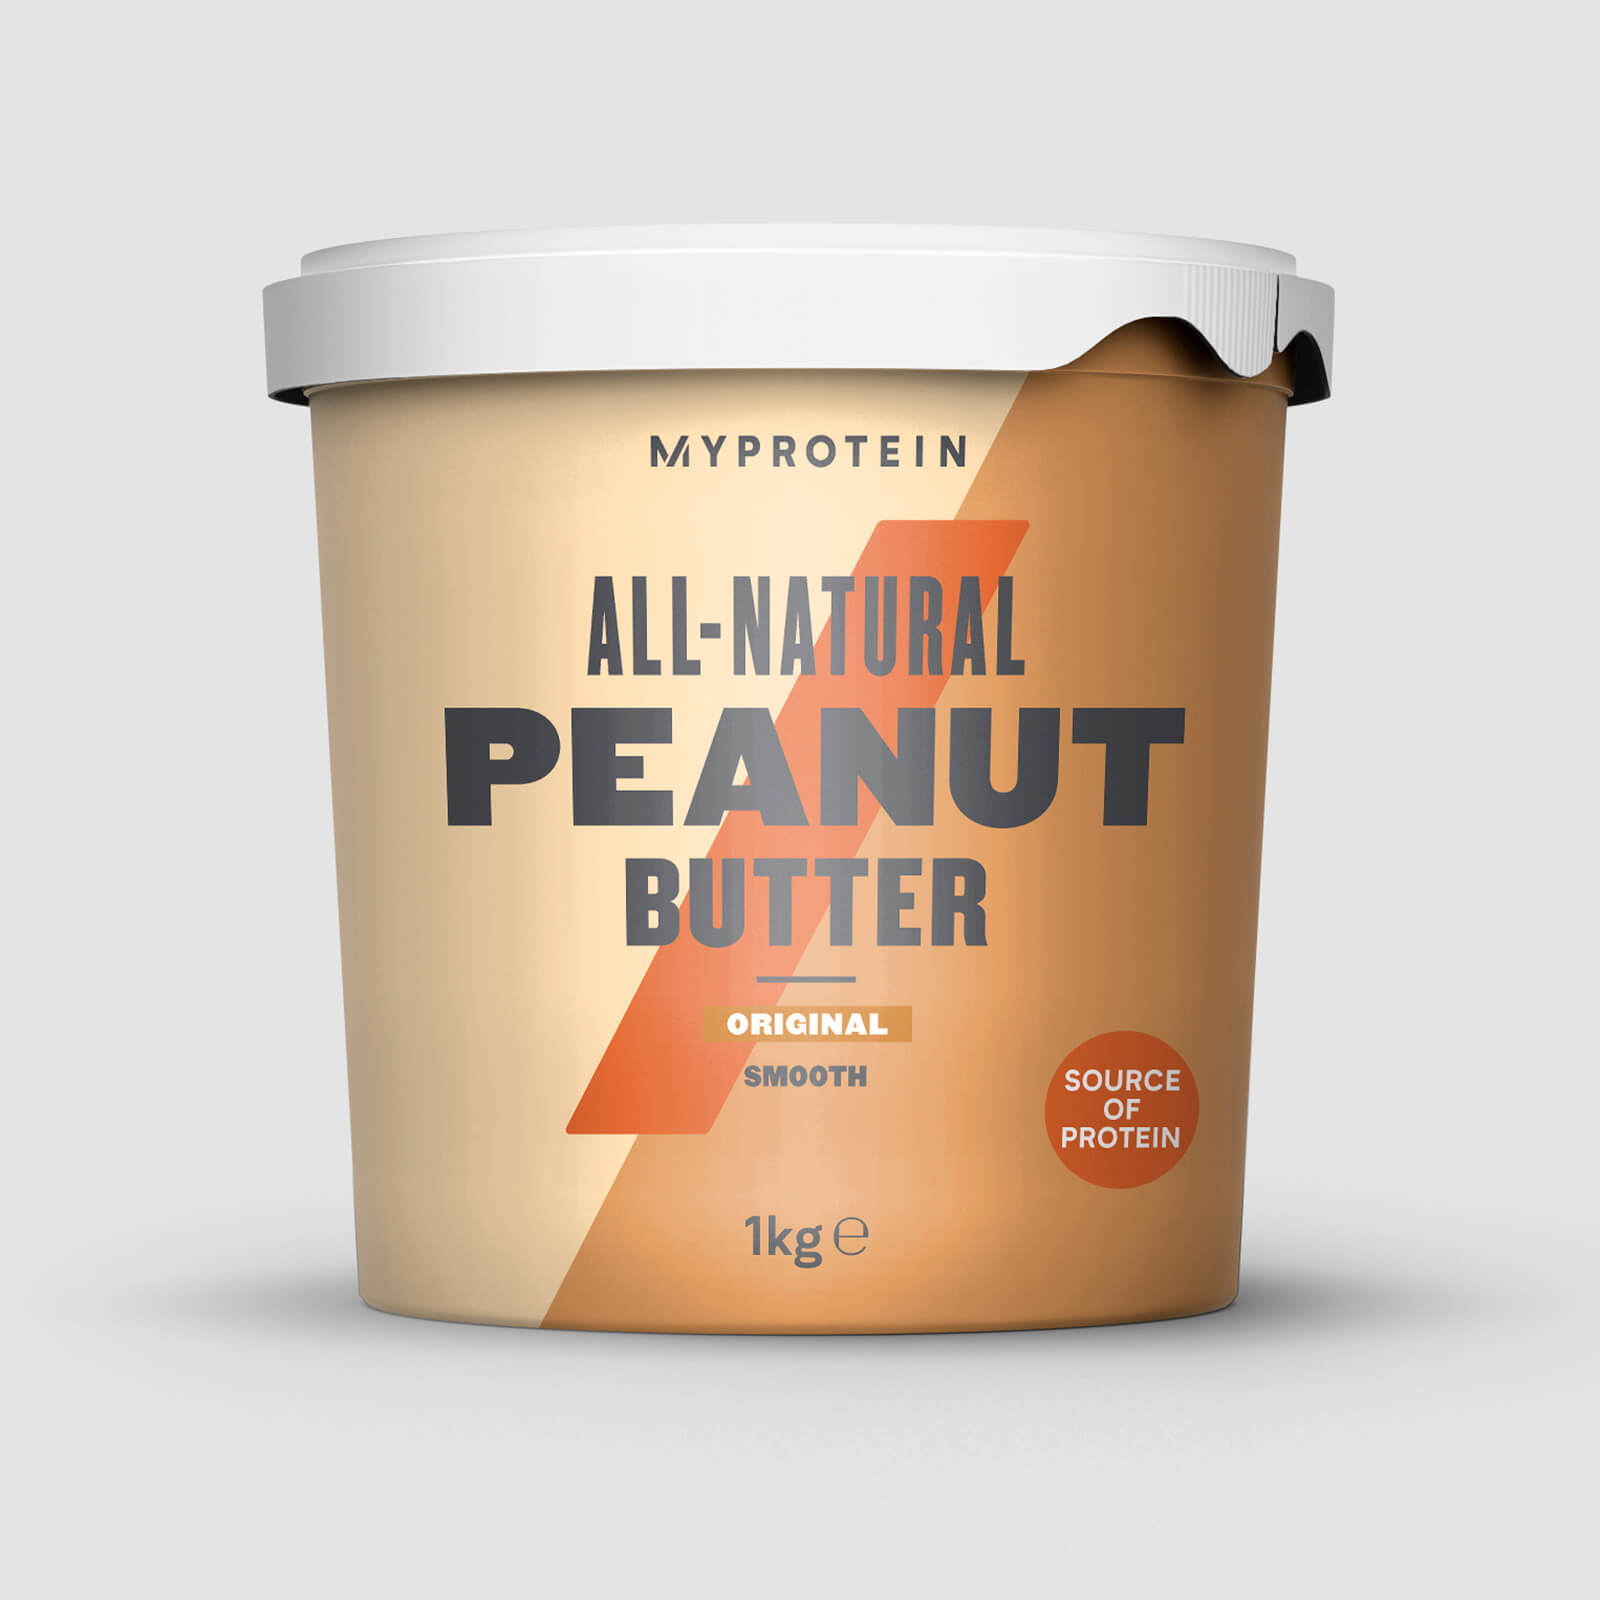 Myprotein Peanut Butter Natural - 1kg - Original - Smooth